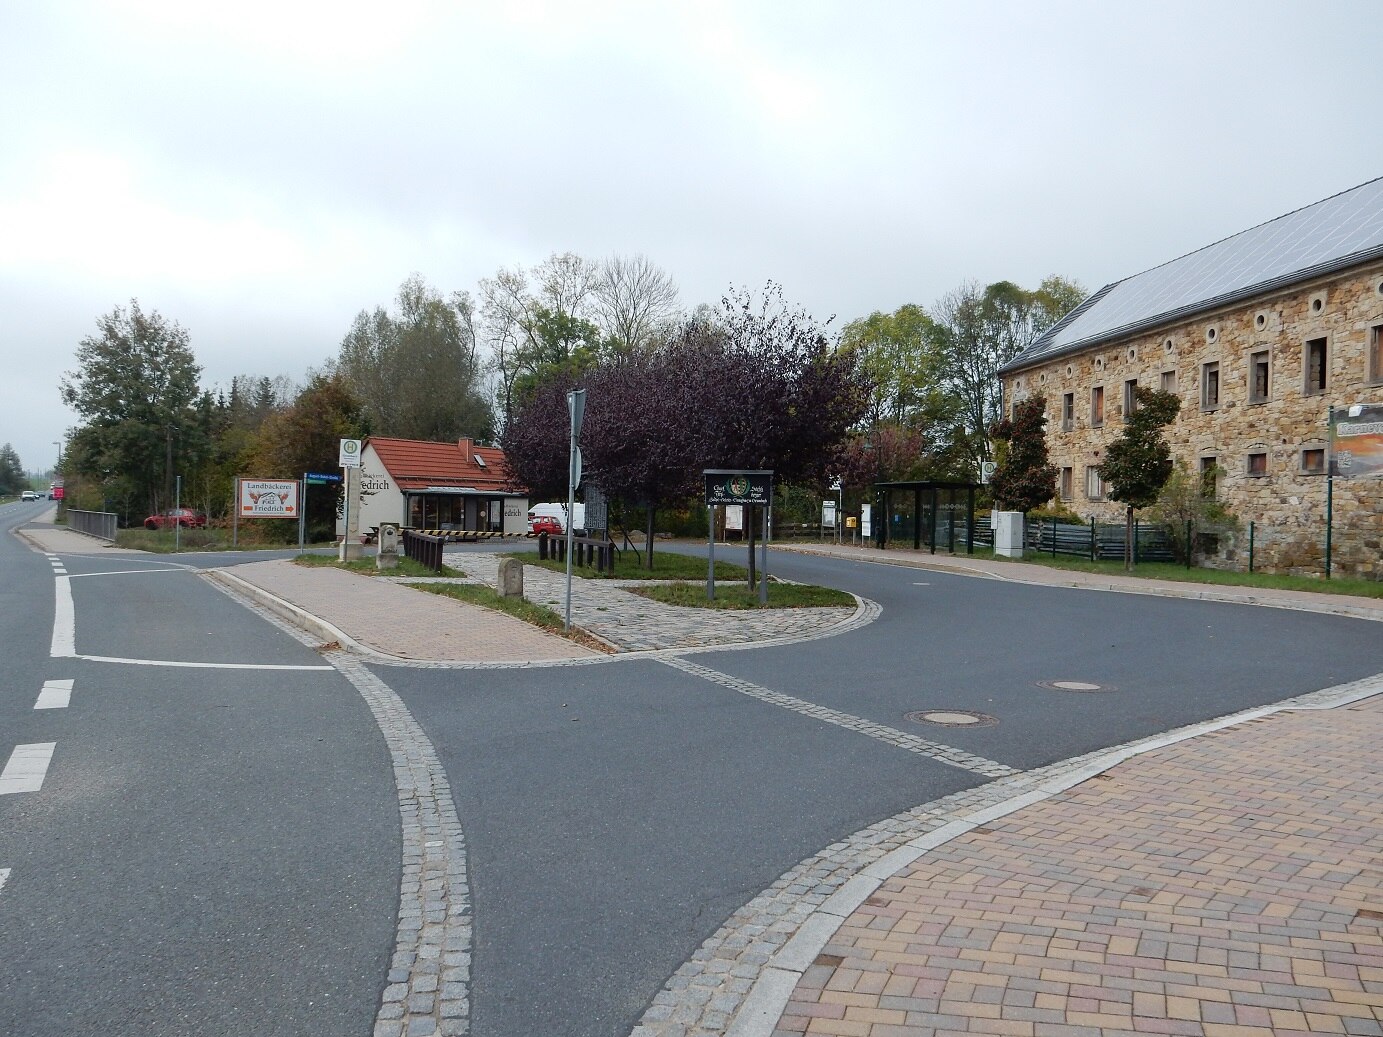 Umgestalteter Dorfplatz mit Straßen, historischer Anlage in der Mitte, Bushaltstelle, Fußweg und Bäckerei im Hintergrund